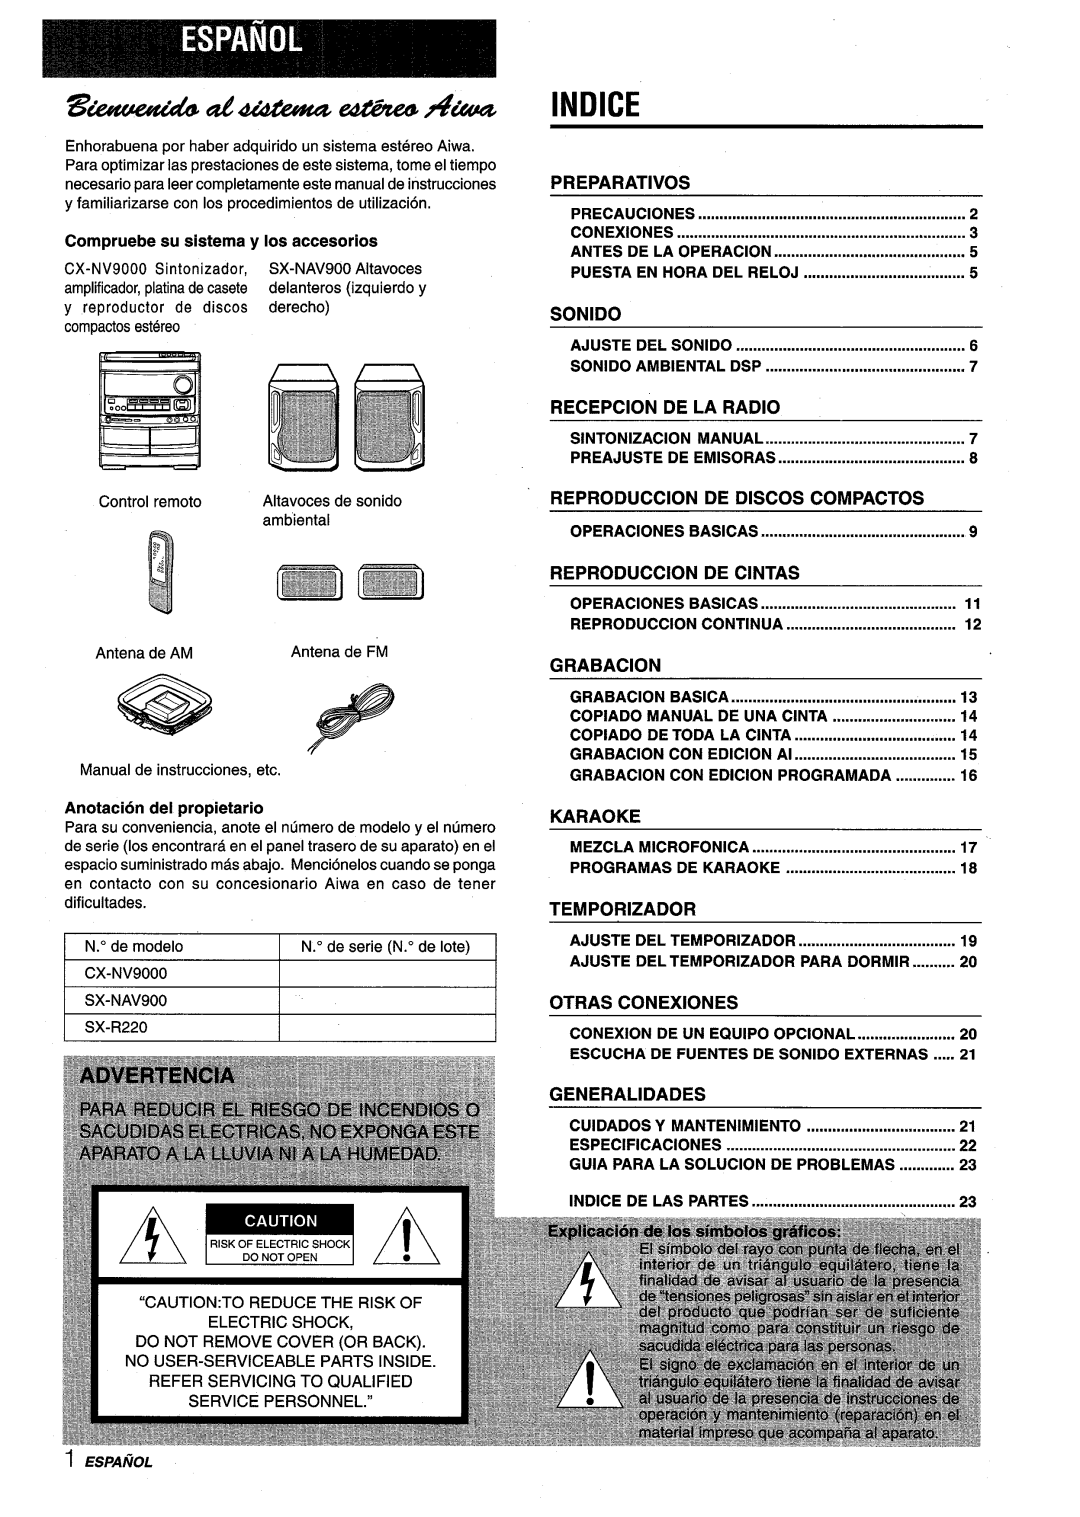 Aiwa NSX-V9000 awf?#&bae &a2#zae42af?4Aka“, Indice, Preparatives, Sonido, Recepcion, De La Radio, Reproduction, De Discos 